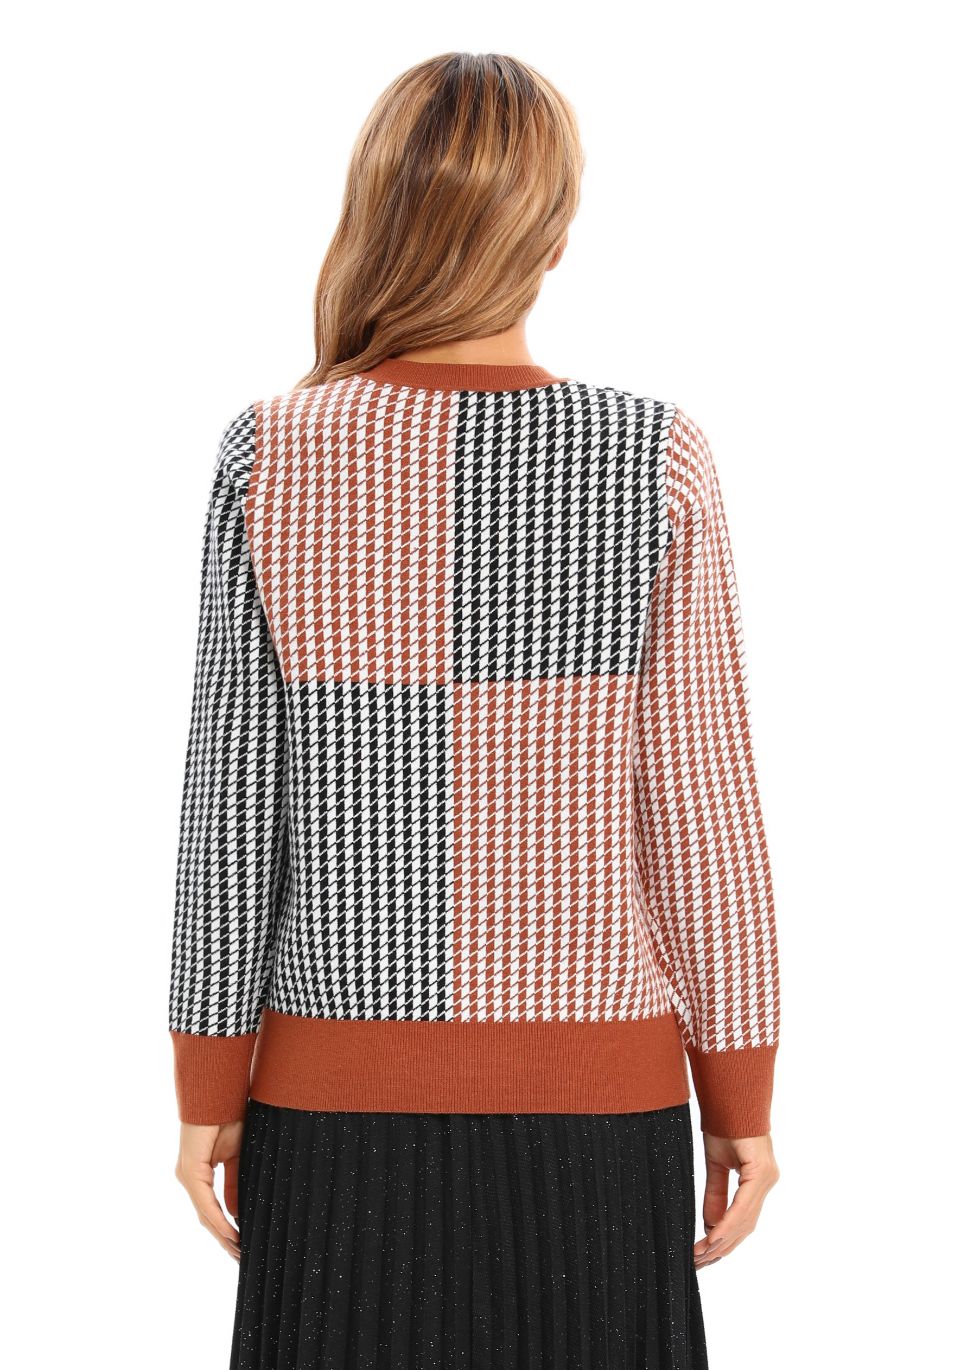 Essential Design Knitted Sweater - MissFinchNYC